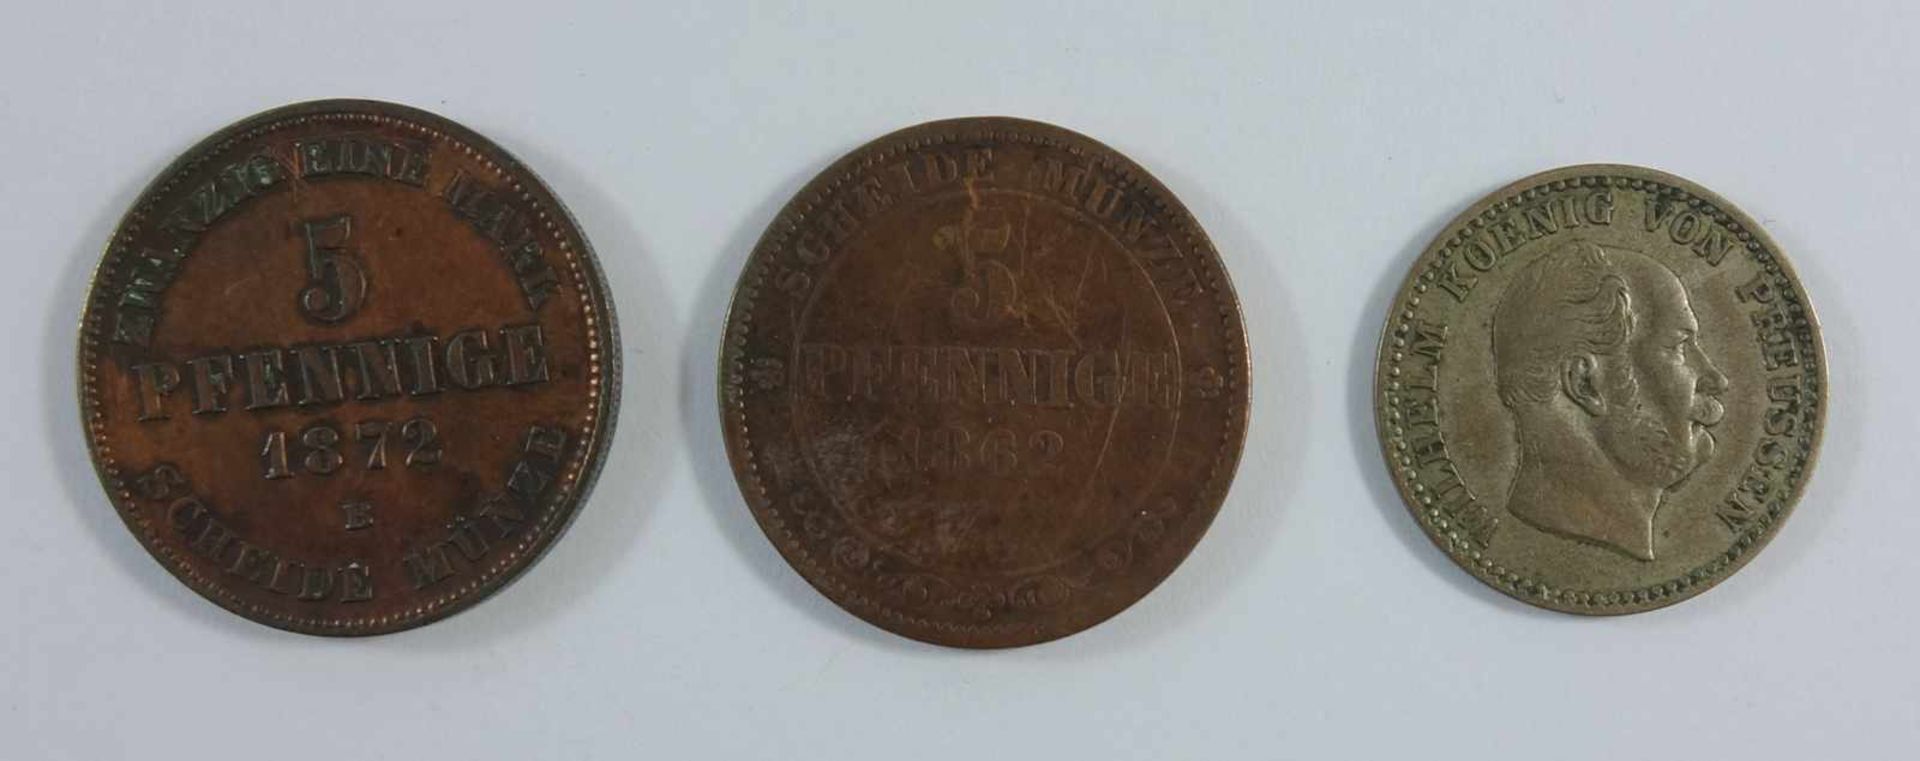 3 Kleinmünzen, 5 Pf. Meckl. Schwerin 1872, B; 3 Pf. Königreich Sachsen 1862; 2 1/2 Silbergroschen